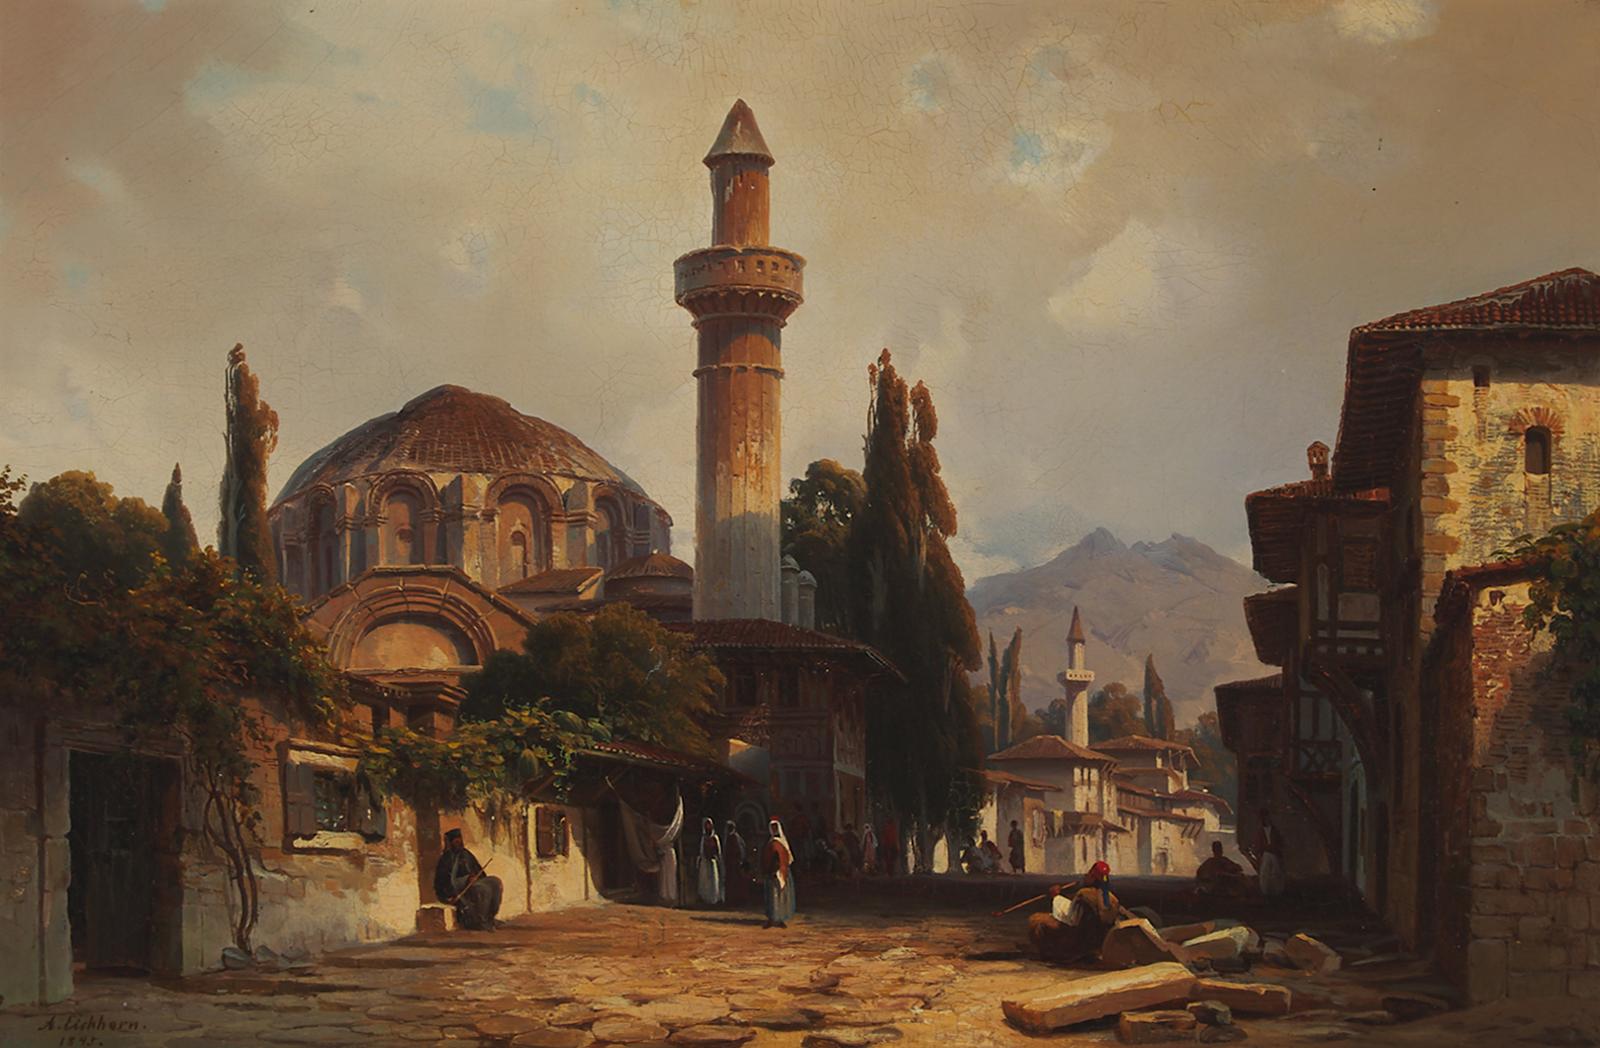 Albert Eichhorn (1811-1851) - Moschee In Patras (Mosque In Patras), 1845